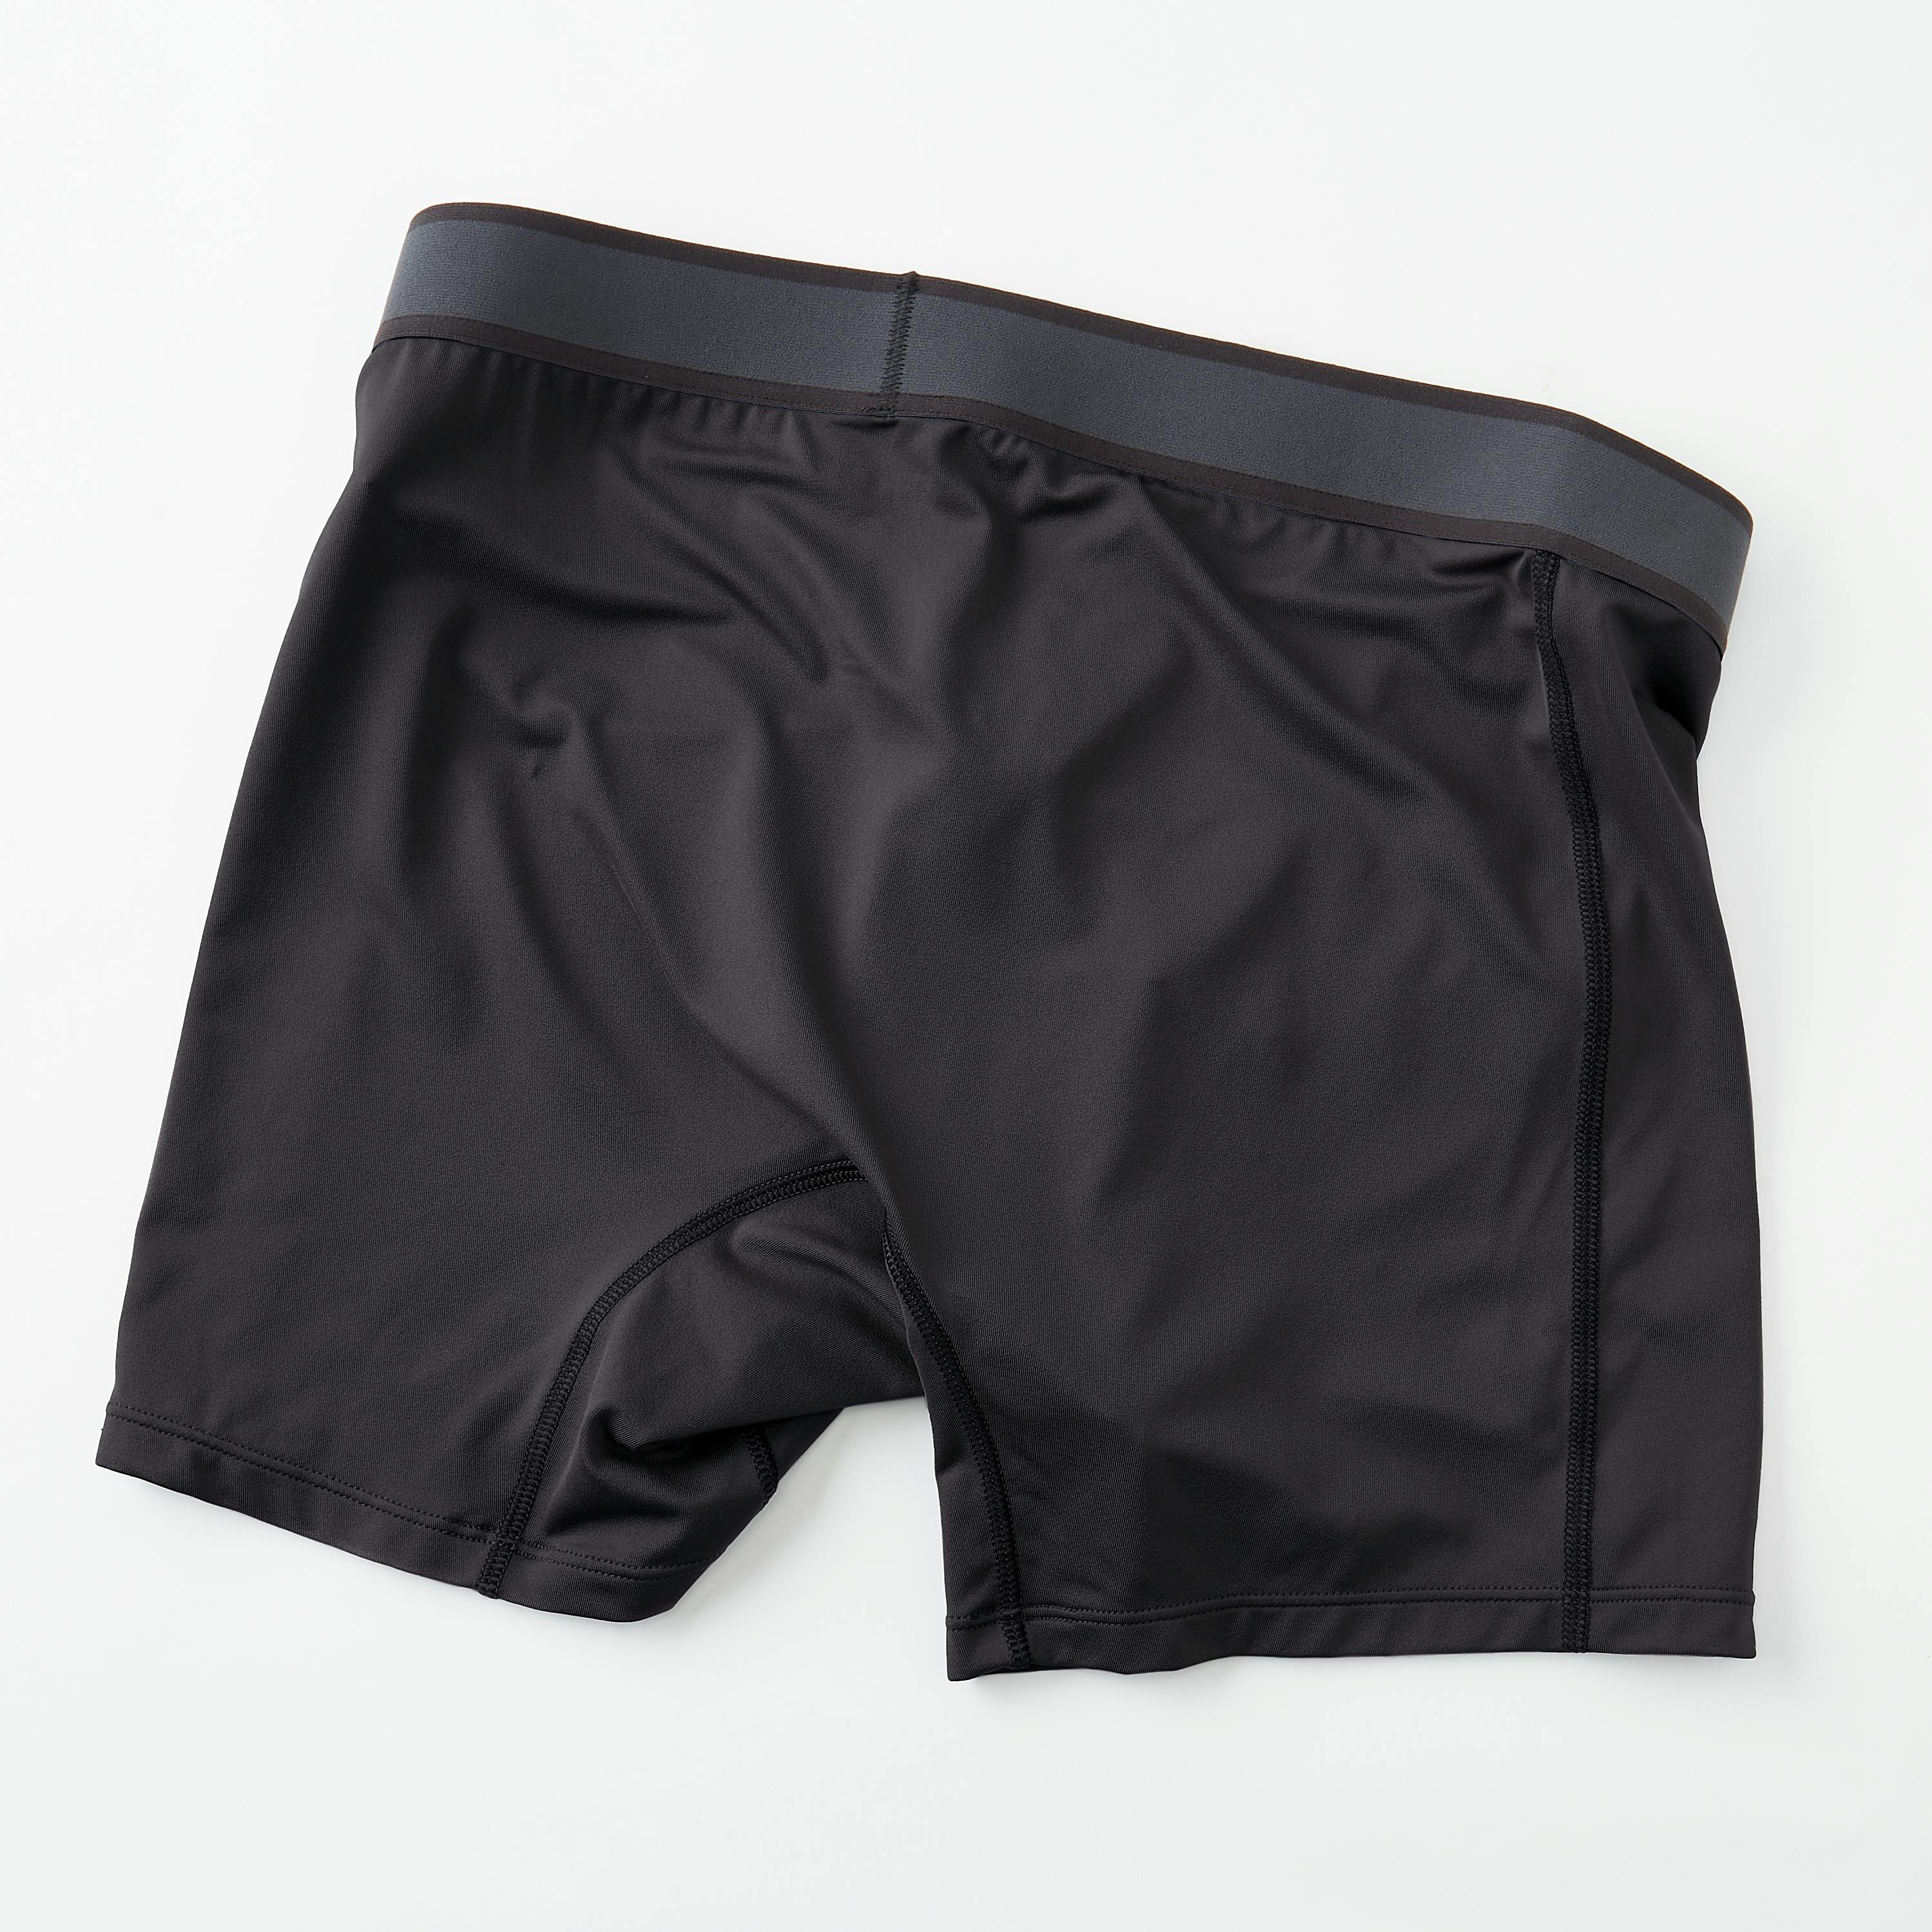 Proof Interval Boxer Briefs - 5 - Black, Underwear